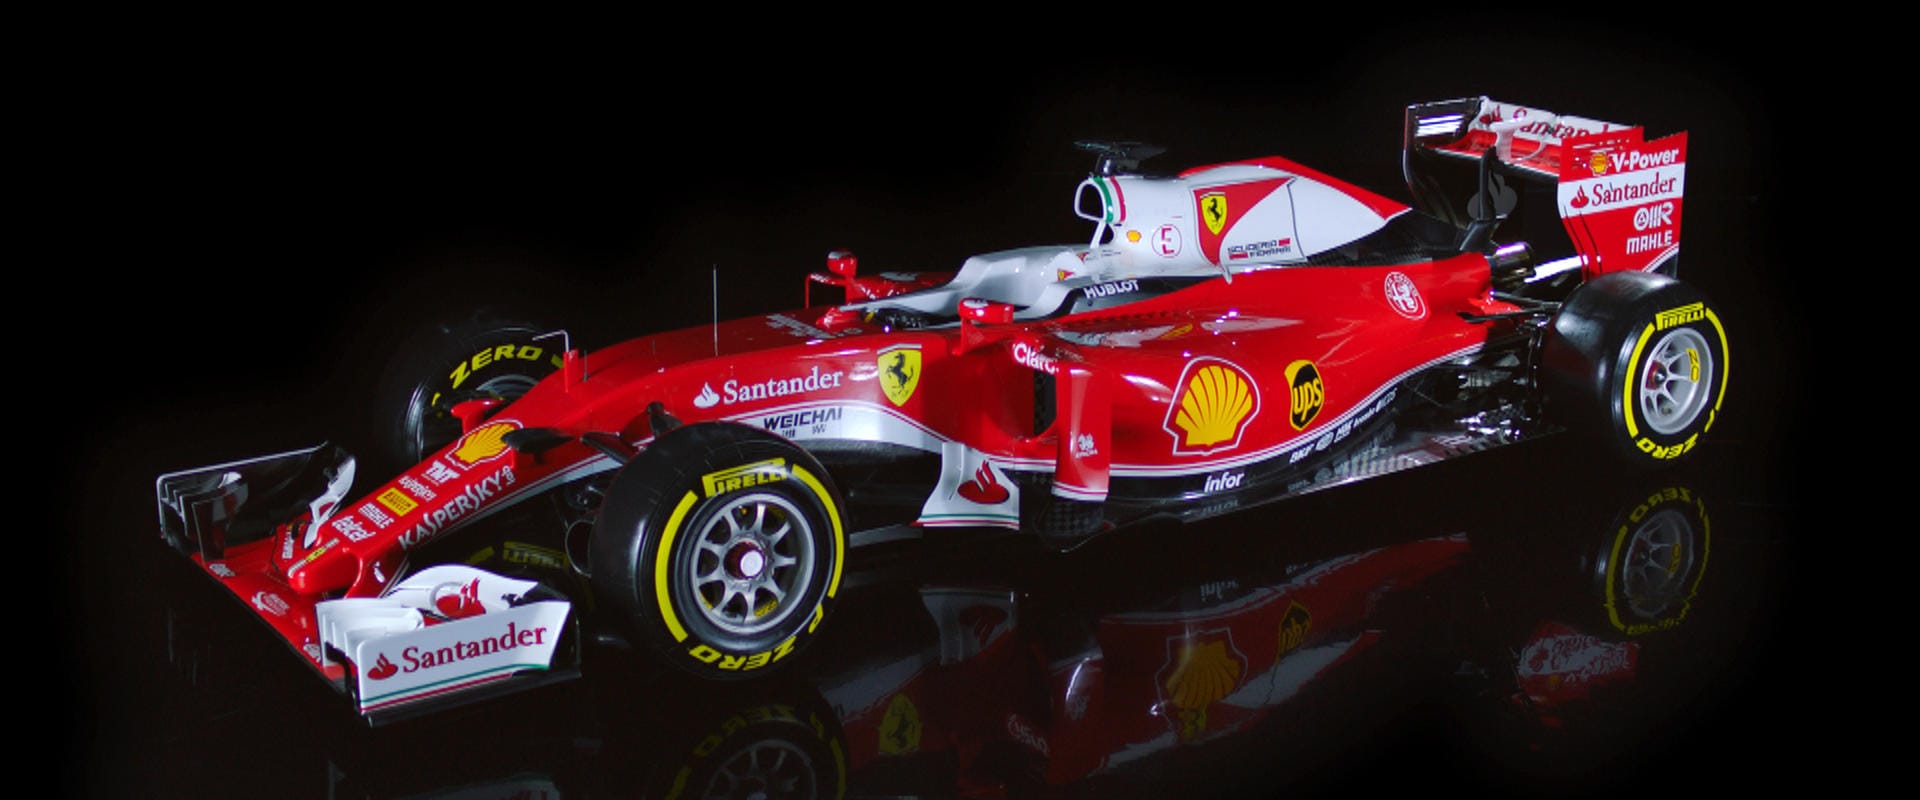 Die Scuderia Ferrari hat im Vergleich zum Vorjahr einiges verändert, auch wenn der SF 16-H auf den ersten schnellen Blick ähnlich aussieht.